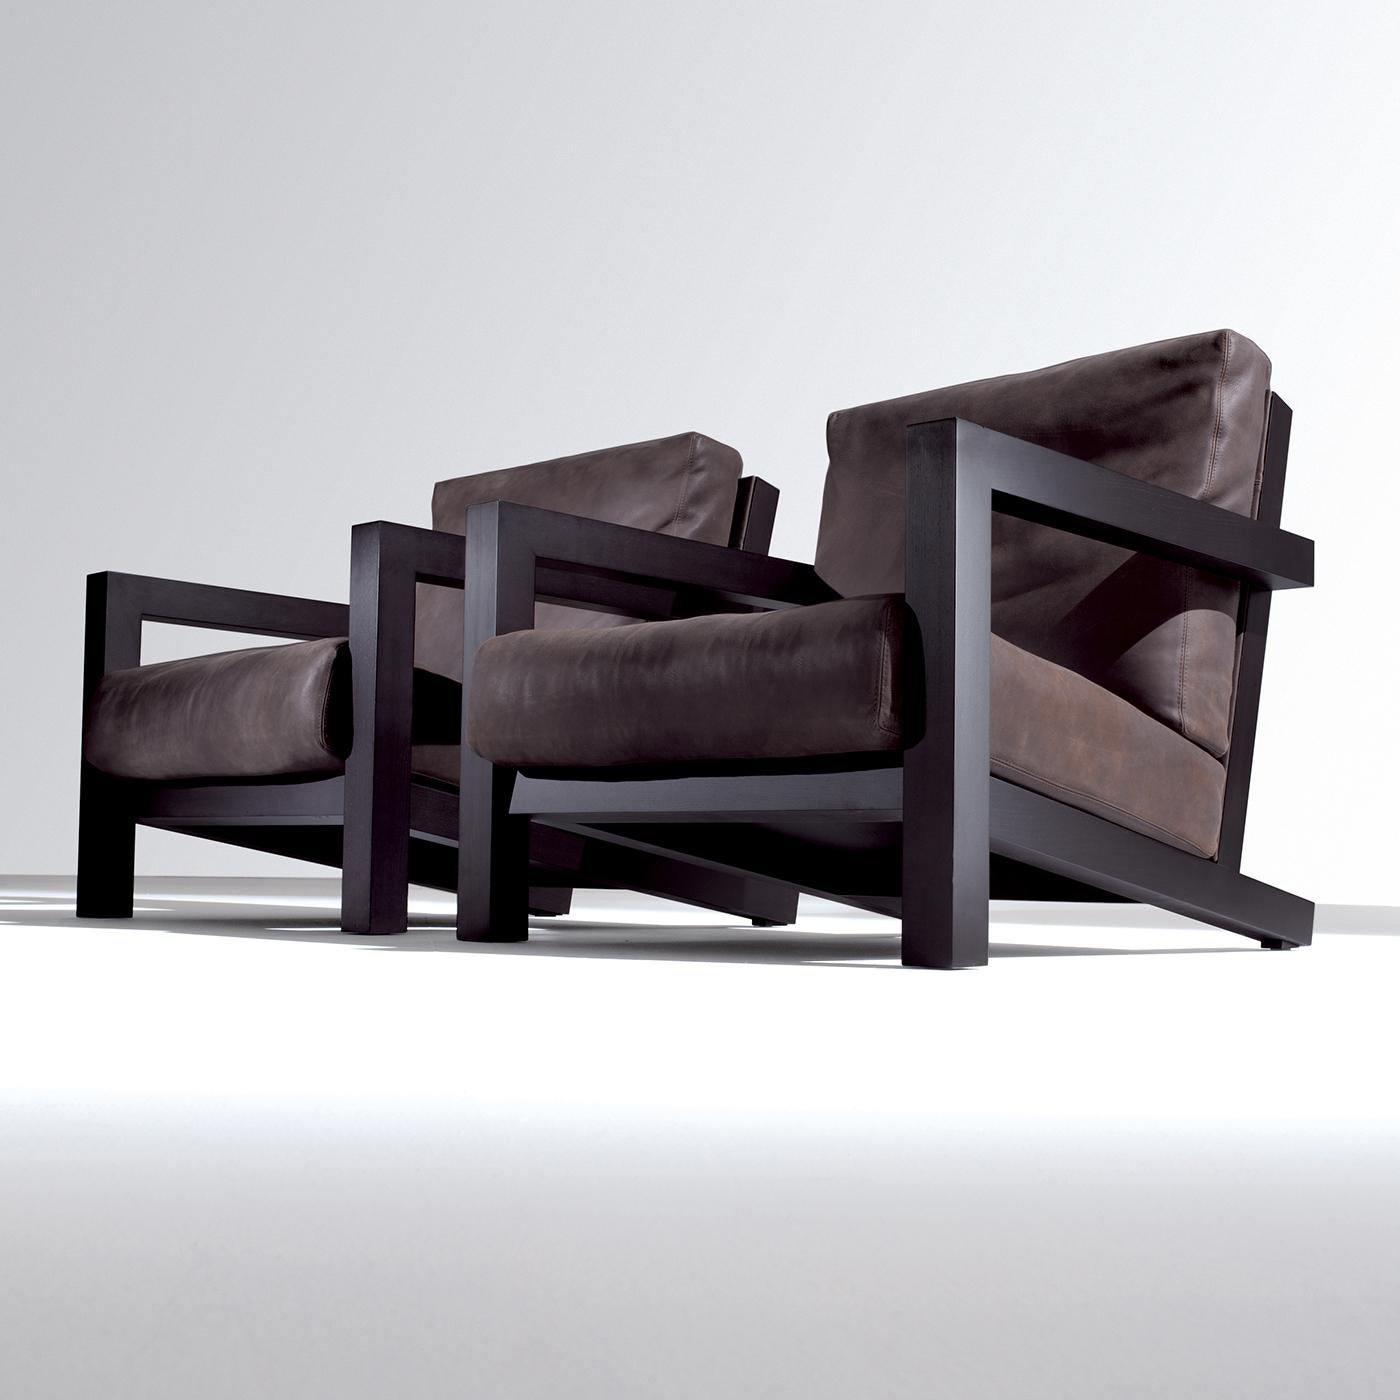 Der BD 21 ist ein eleganter Sessel mit einem Gestell aus Eschenholz, das in verschiedenen Varianten gebeizt oder lackiert werden kann, mit äußerst bequemen Sitz- und Rückenkissen, die mit Gänsedaunen und Polyurethanschaum gepolstert und mit Stoff